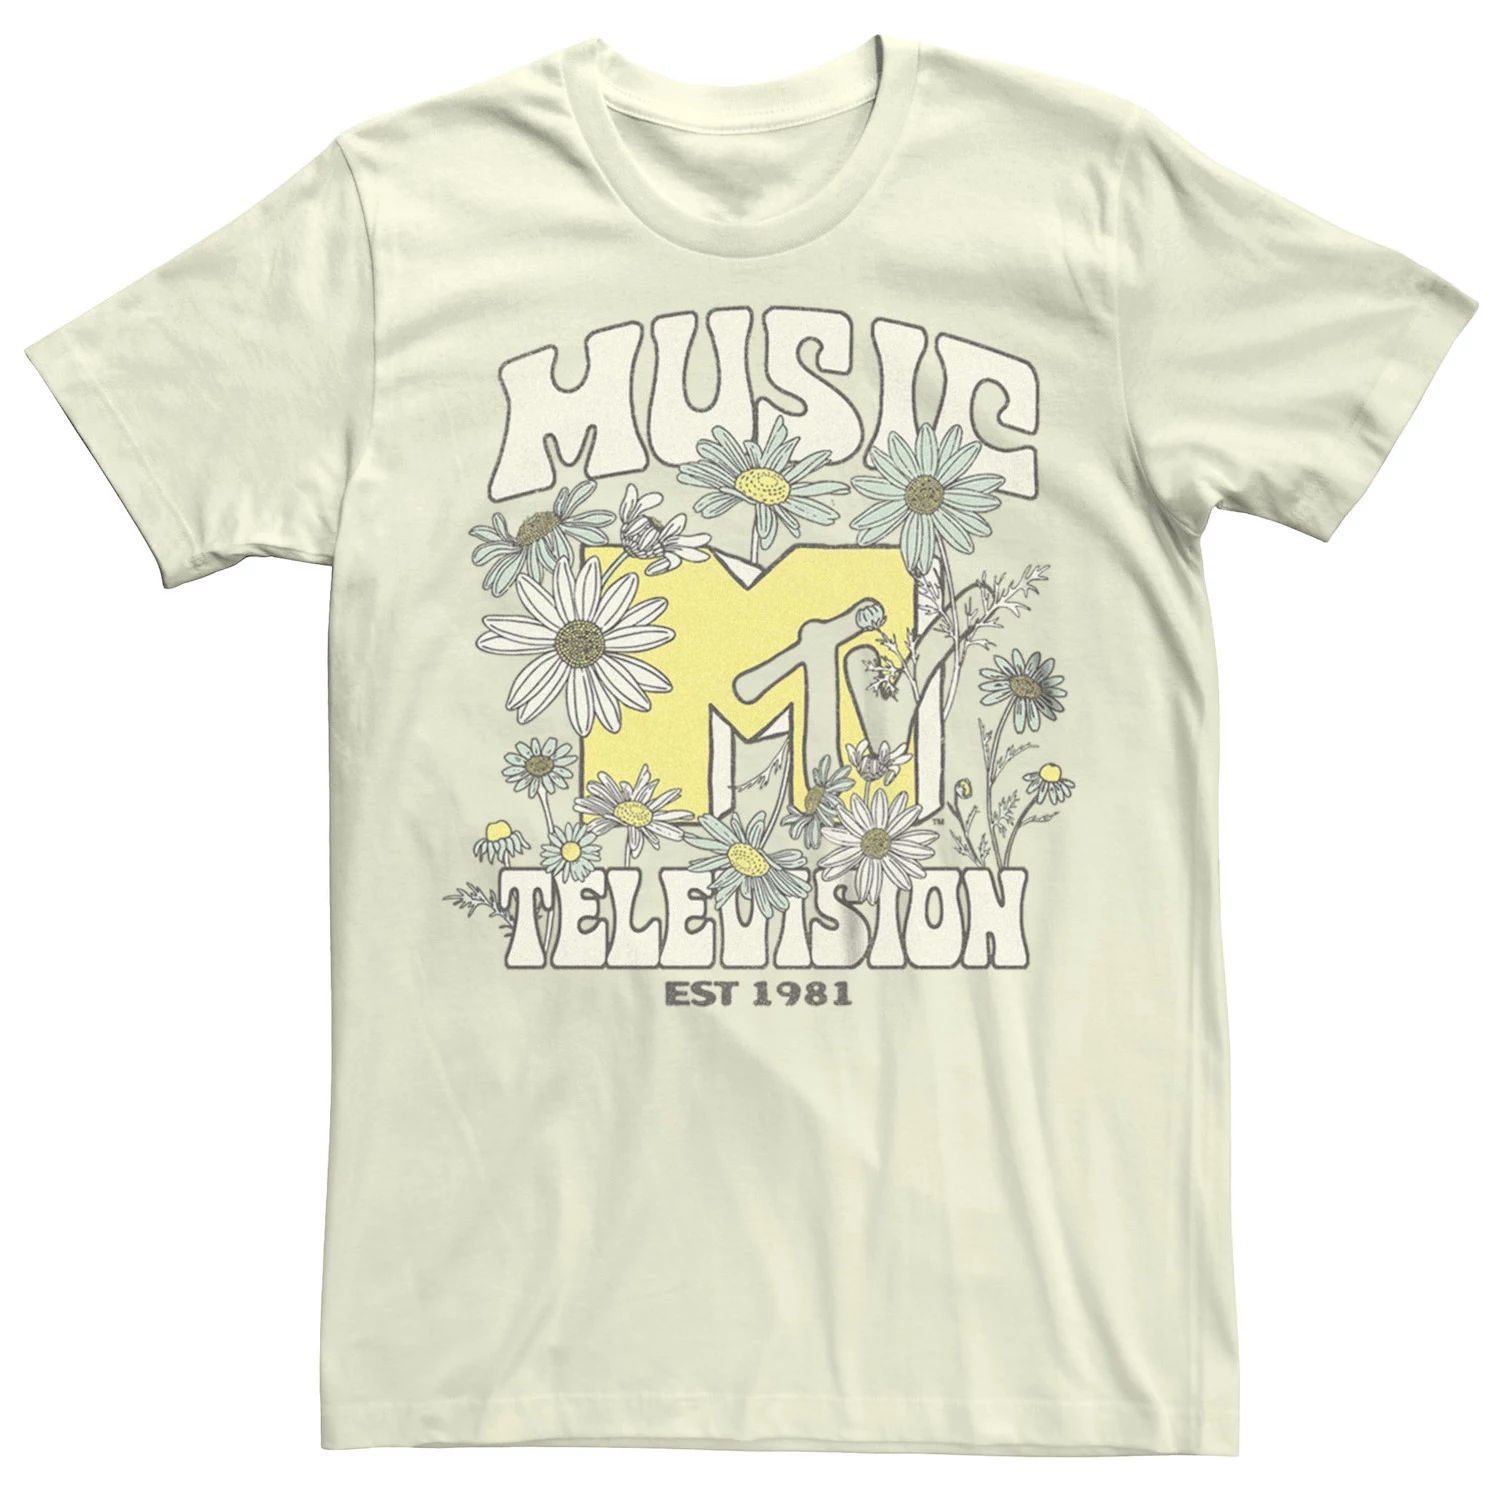 Детская футболка с логотипом MTV EST 1981 Flowers Licensed Character футболка с логотипом mtv i want my mtv est 1981 для мальчиков 8–20 лет licensed character